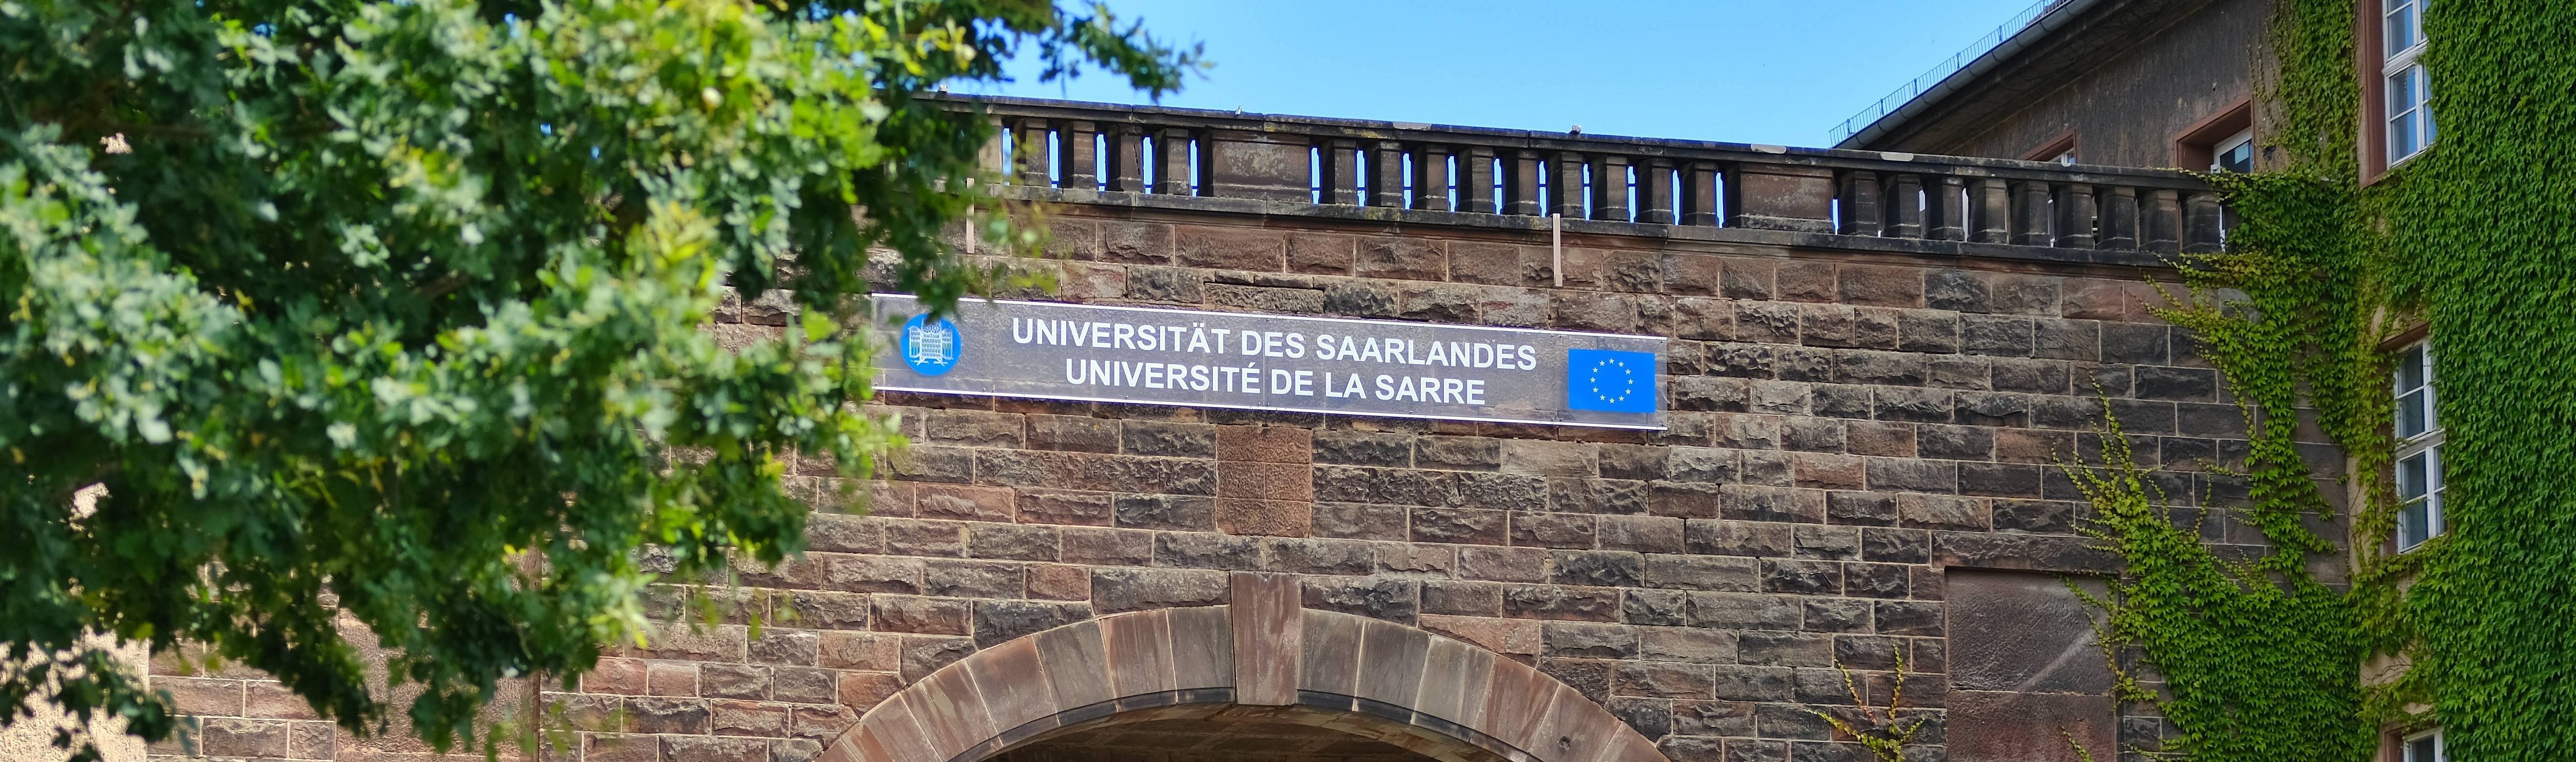 Eingangsportal der Universität des Saarlandes mit der deutsch-französischen Benennung Universität des Saarlandes, Université de la Sarre